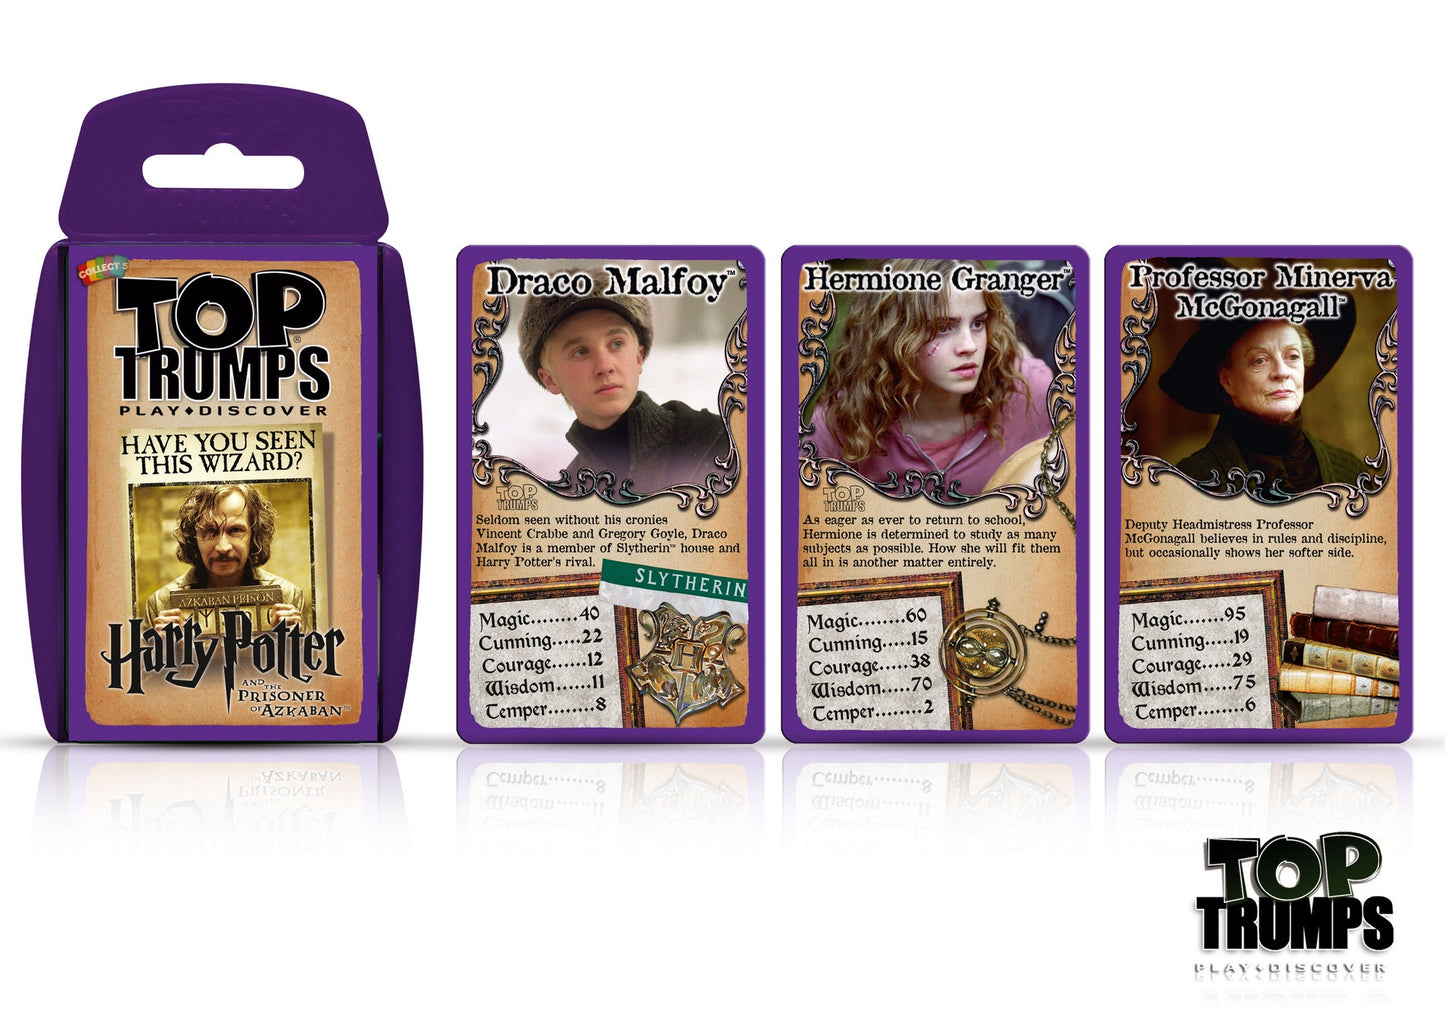 TOP TRUMPS - Harry Potter Prisoner of Azkaban